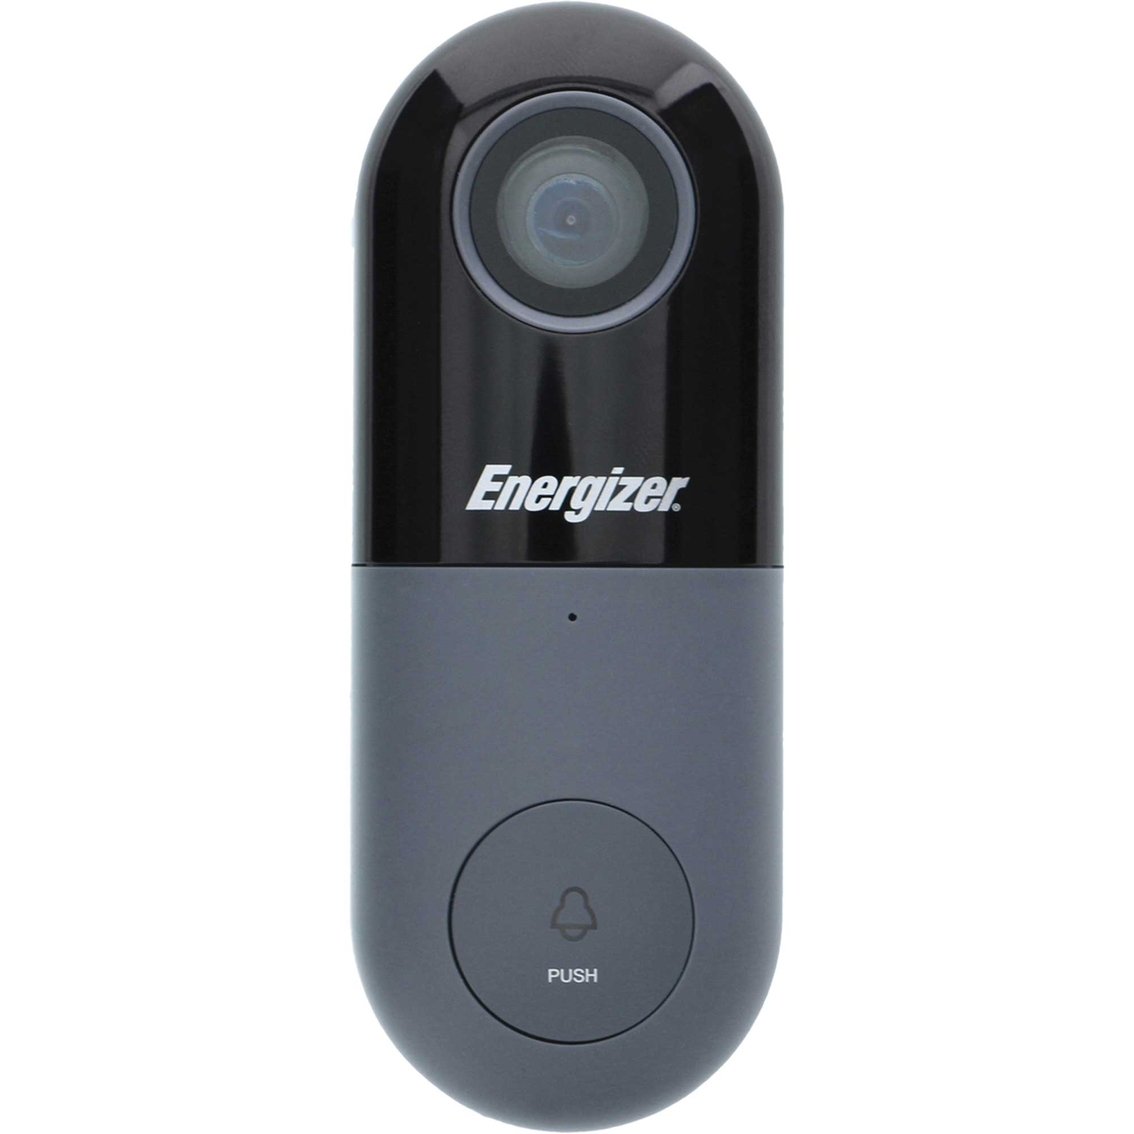 Energizer Smart 1080p Video Doorbell - Image 1 of 8